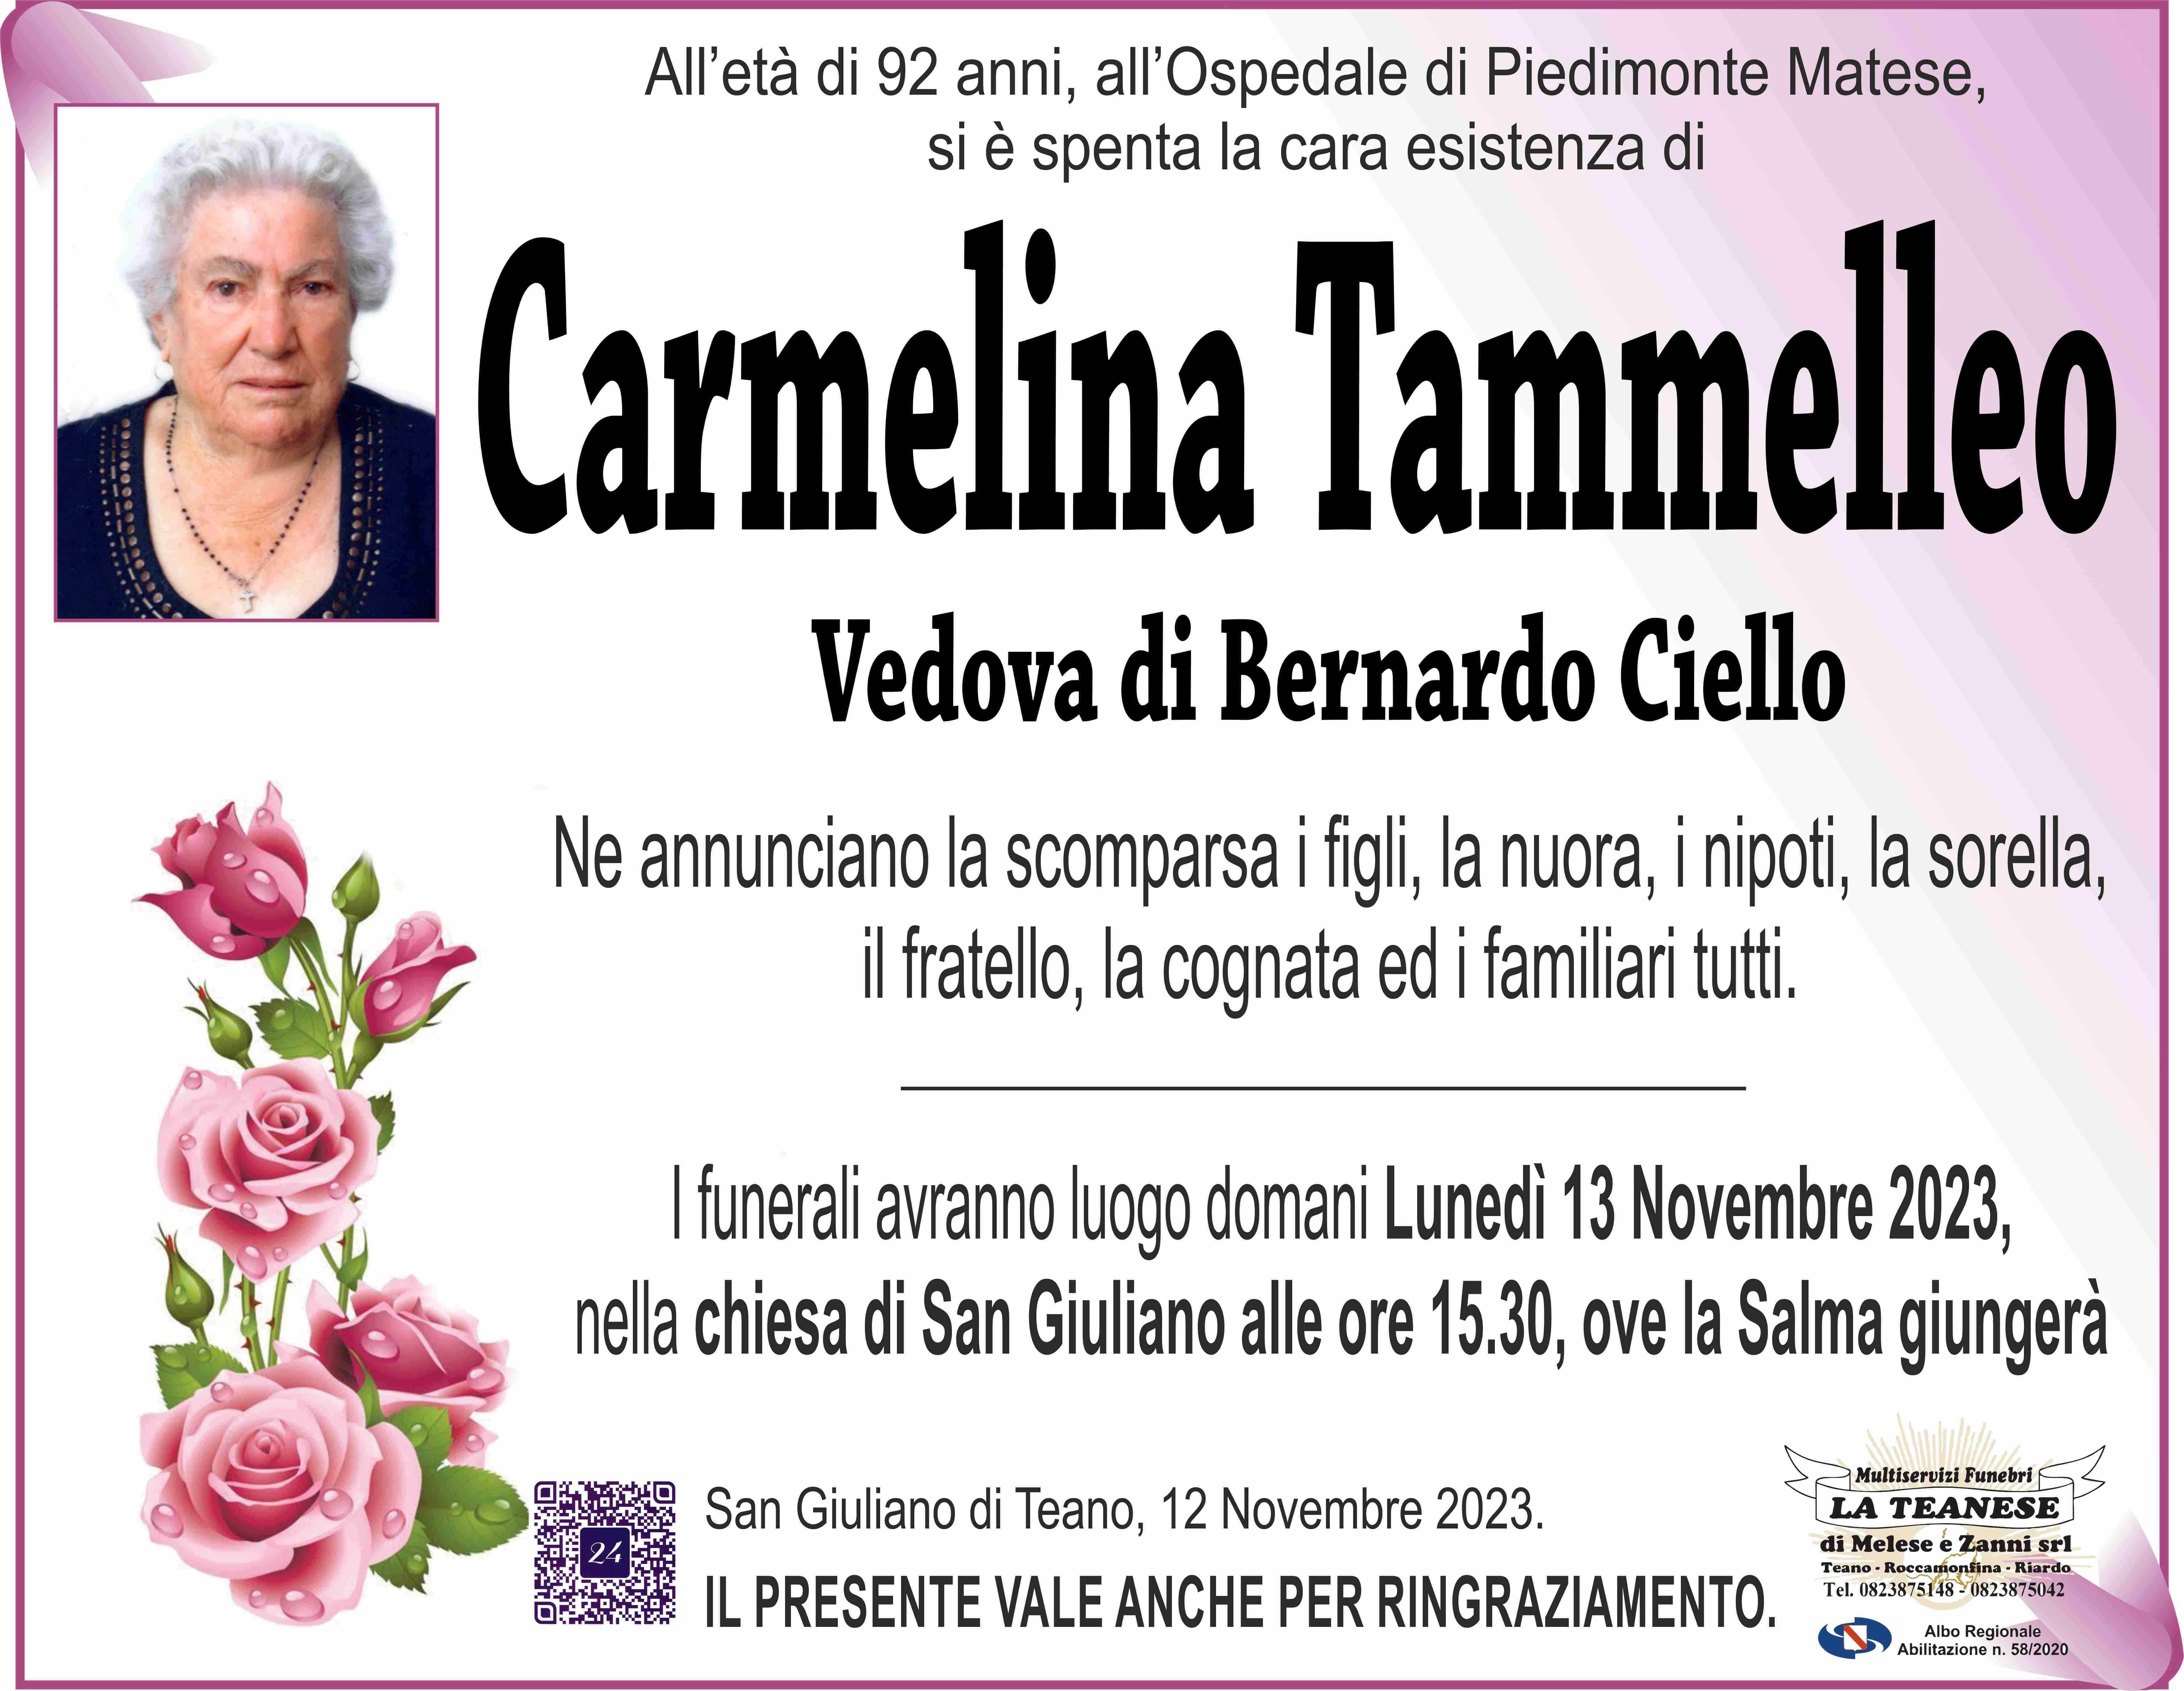 Carmelina Tammelleo